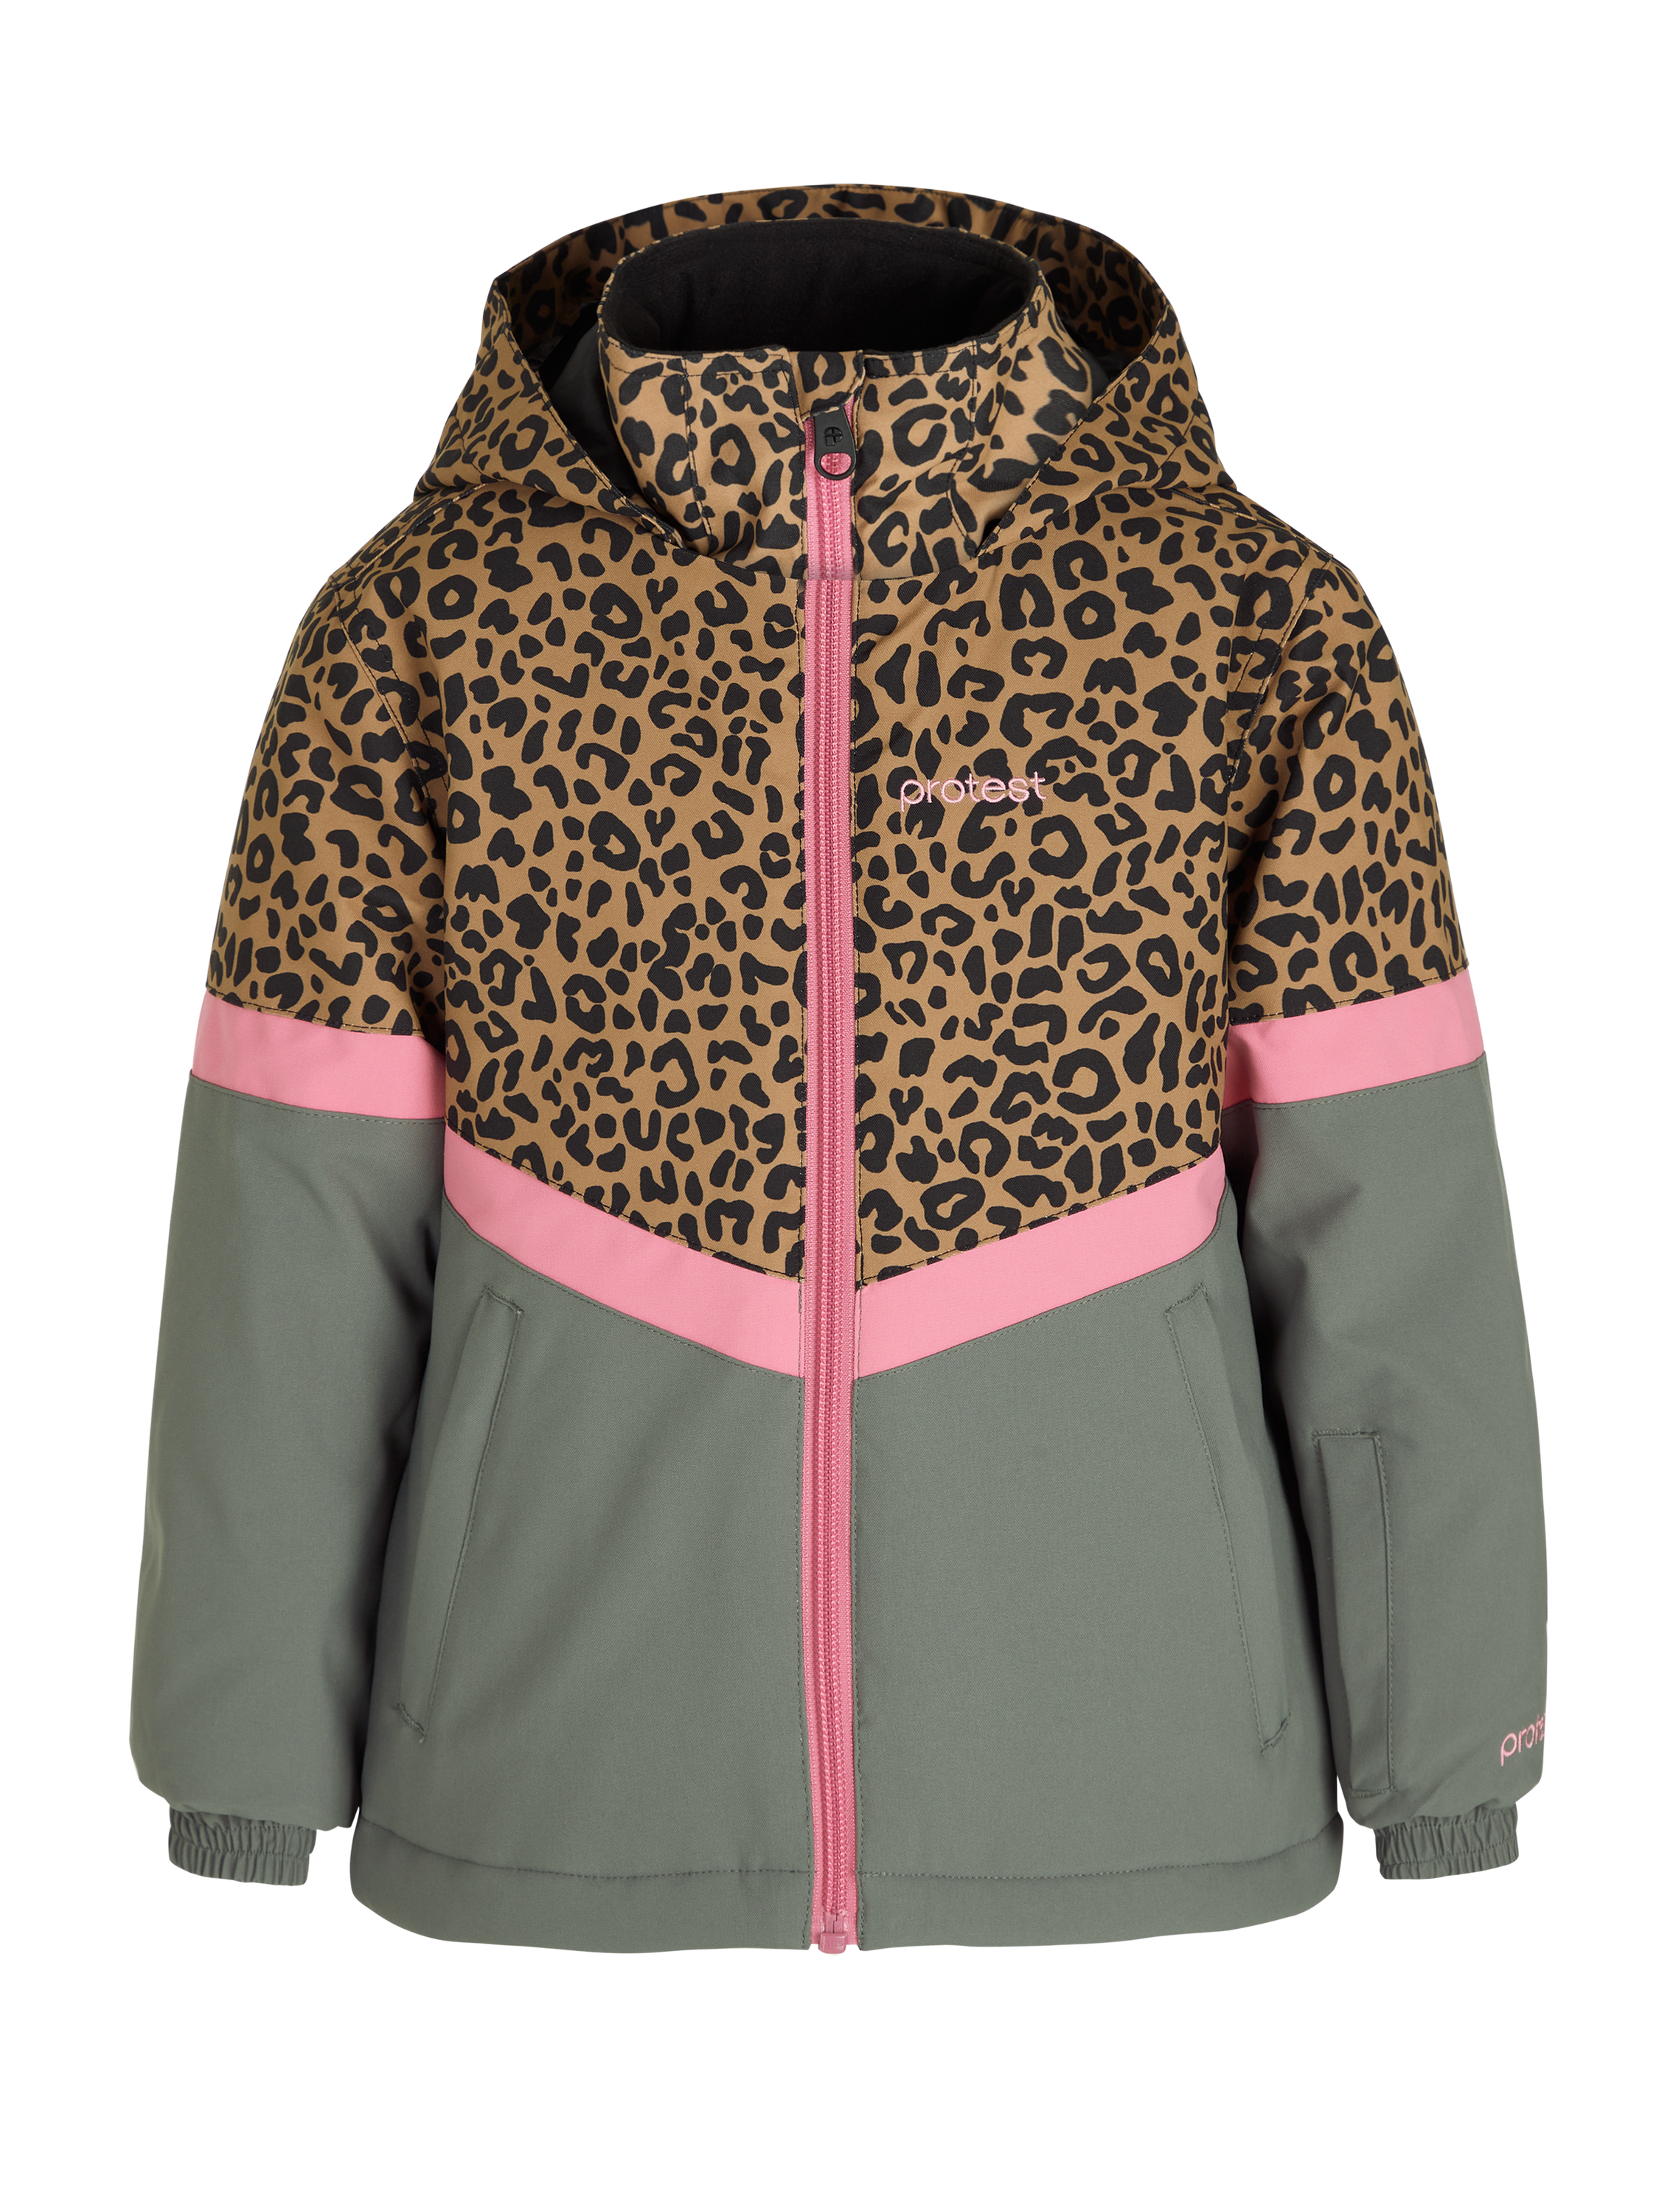 Weerkaatsing salami meisje Protest Prtlilly td Leopard ski jacket Fudgecamel | PROTEST United States